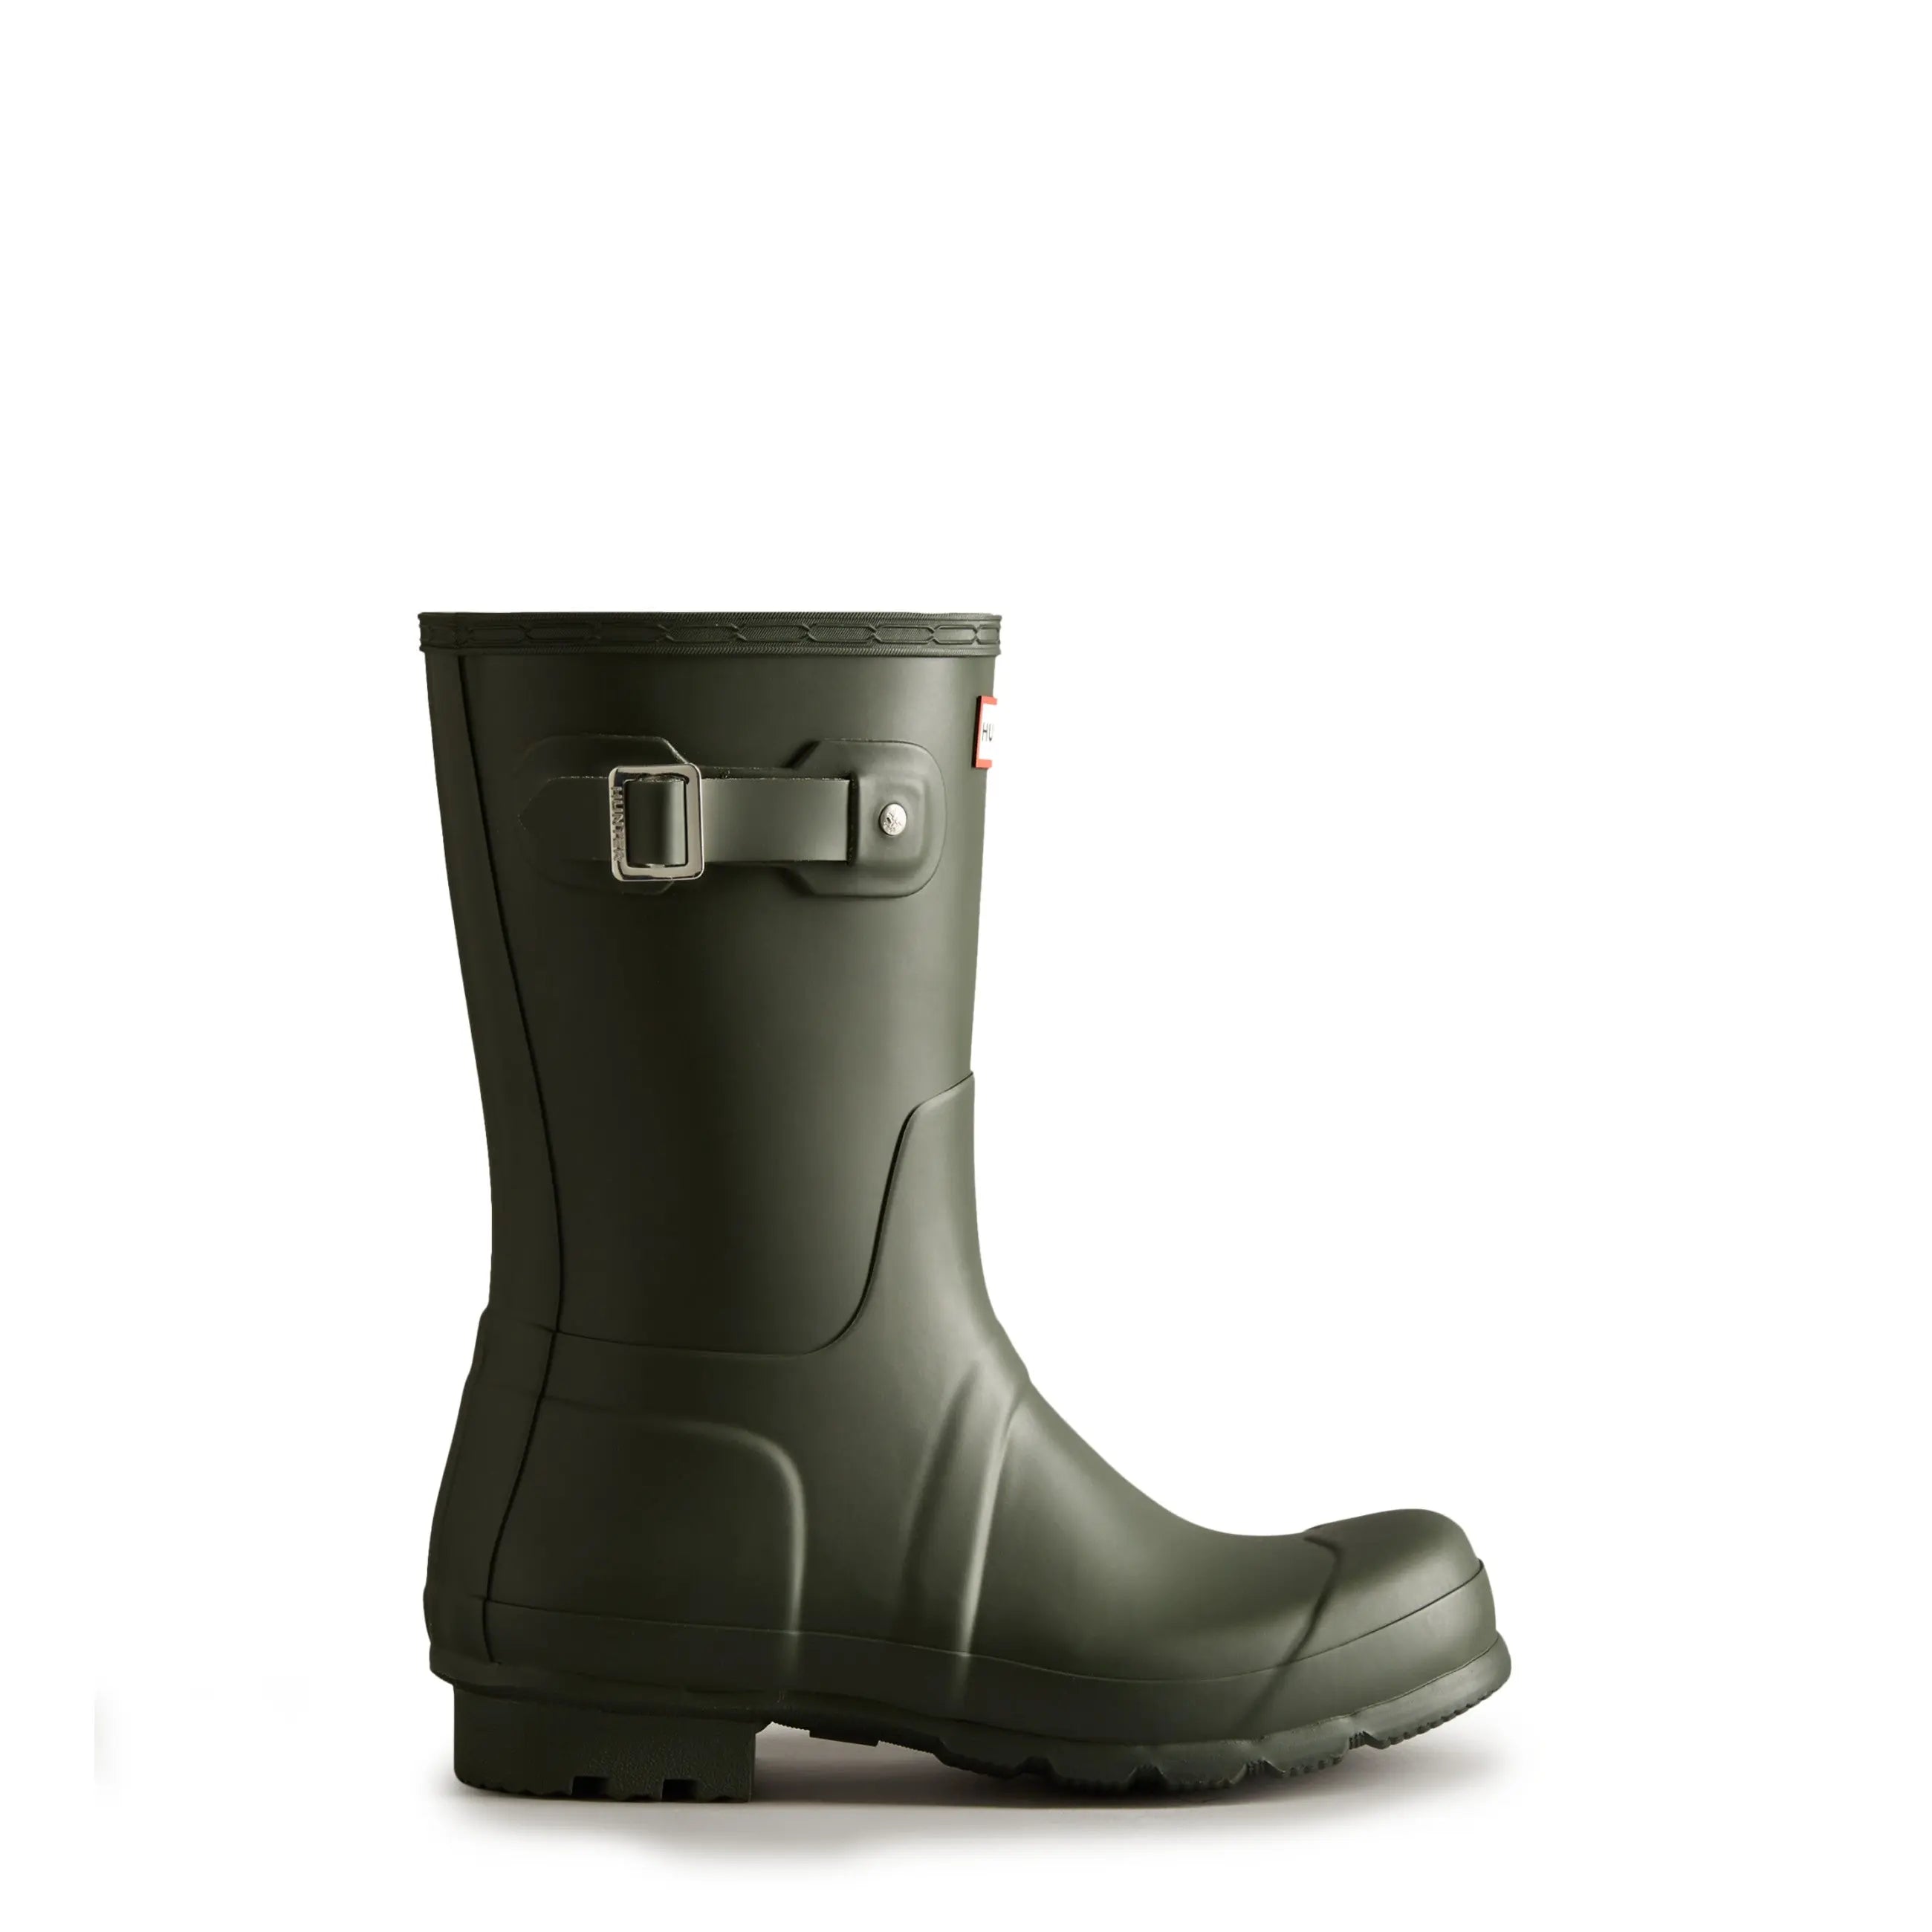 Men's Original Short Rain Boots - Hunter Boots Men's Original Short Rain Boots Dark Olive Hunter Boots Men's > Rain Boots > Short Rain Boots